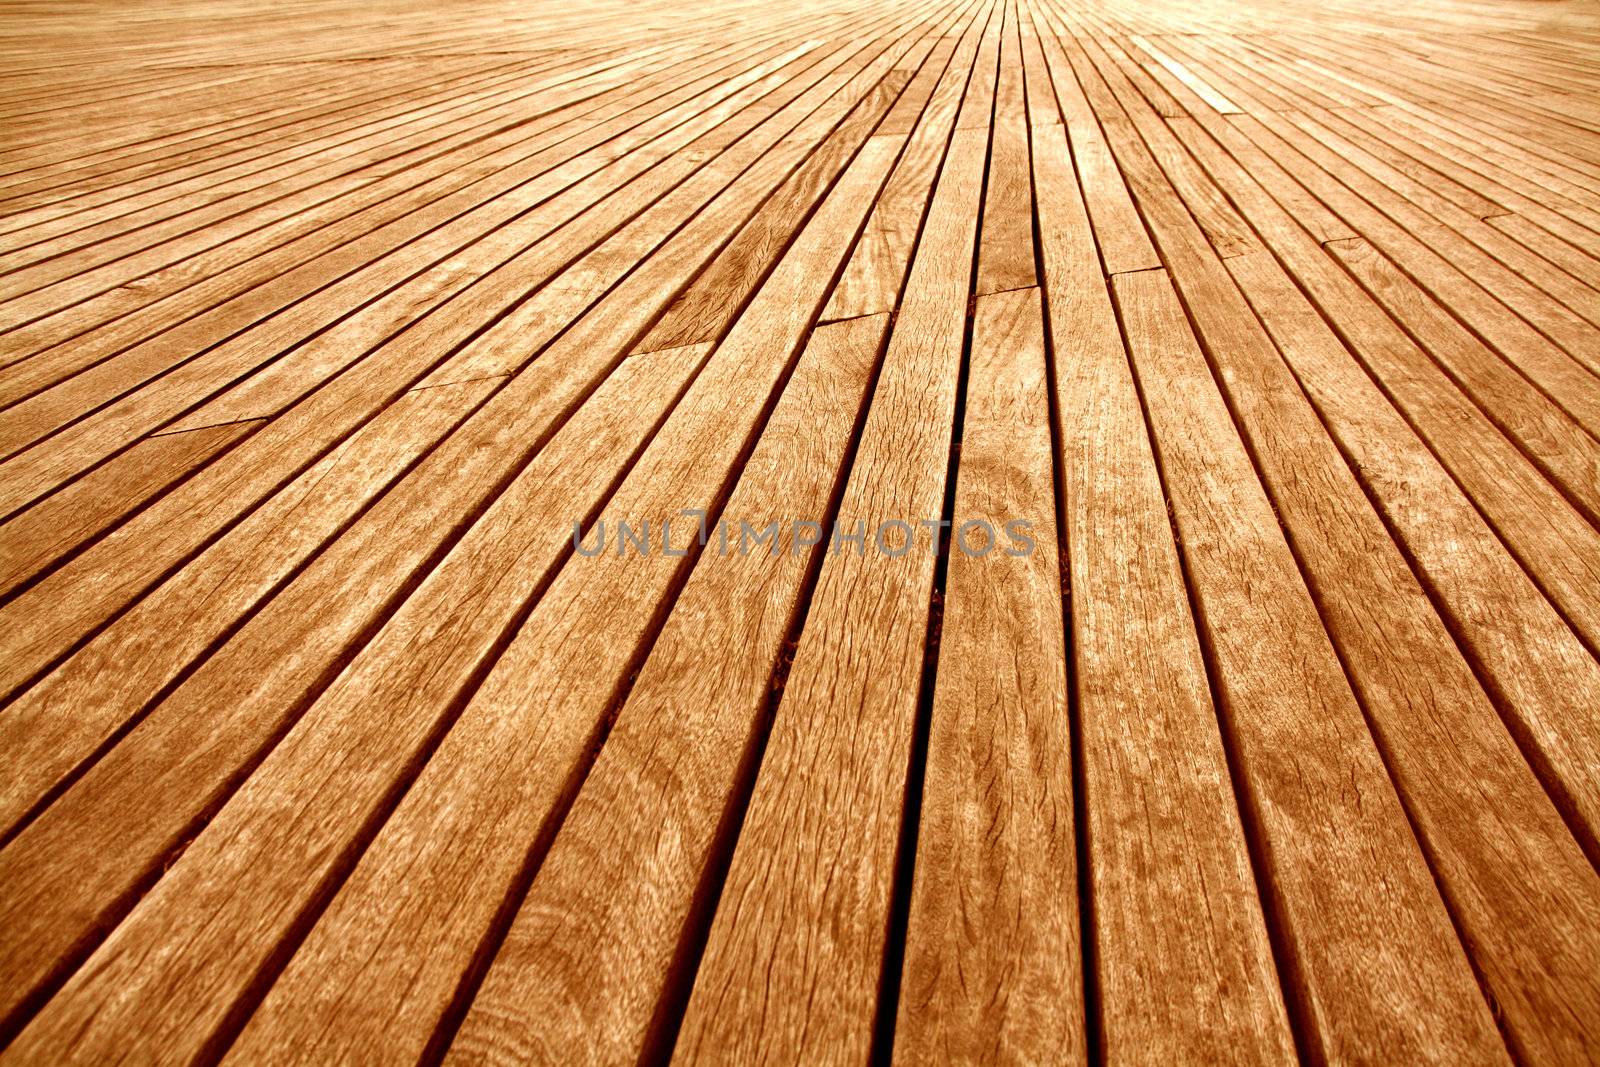 background texture of wooden boards floor
